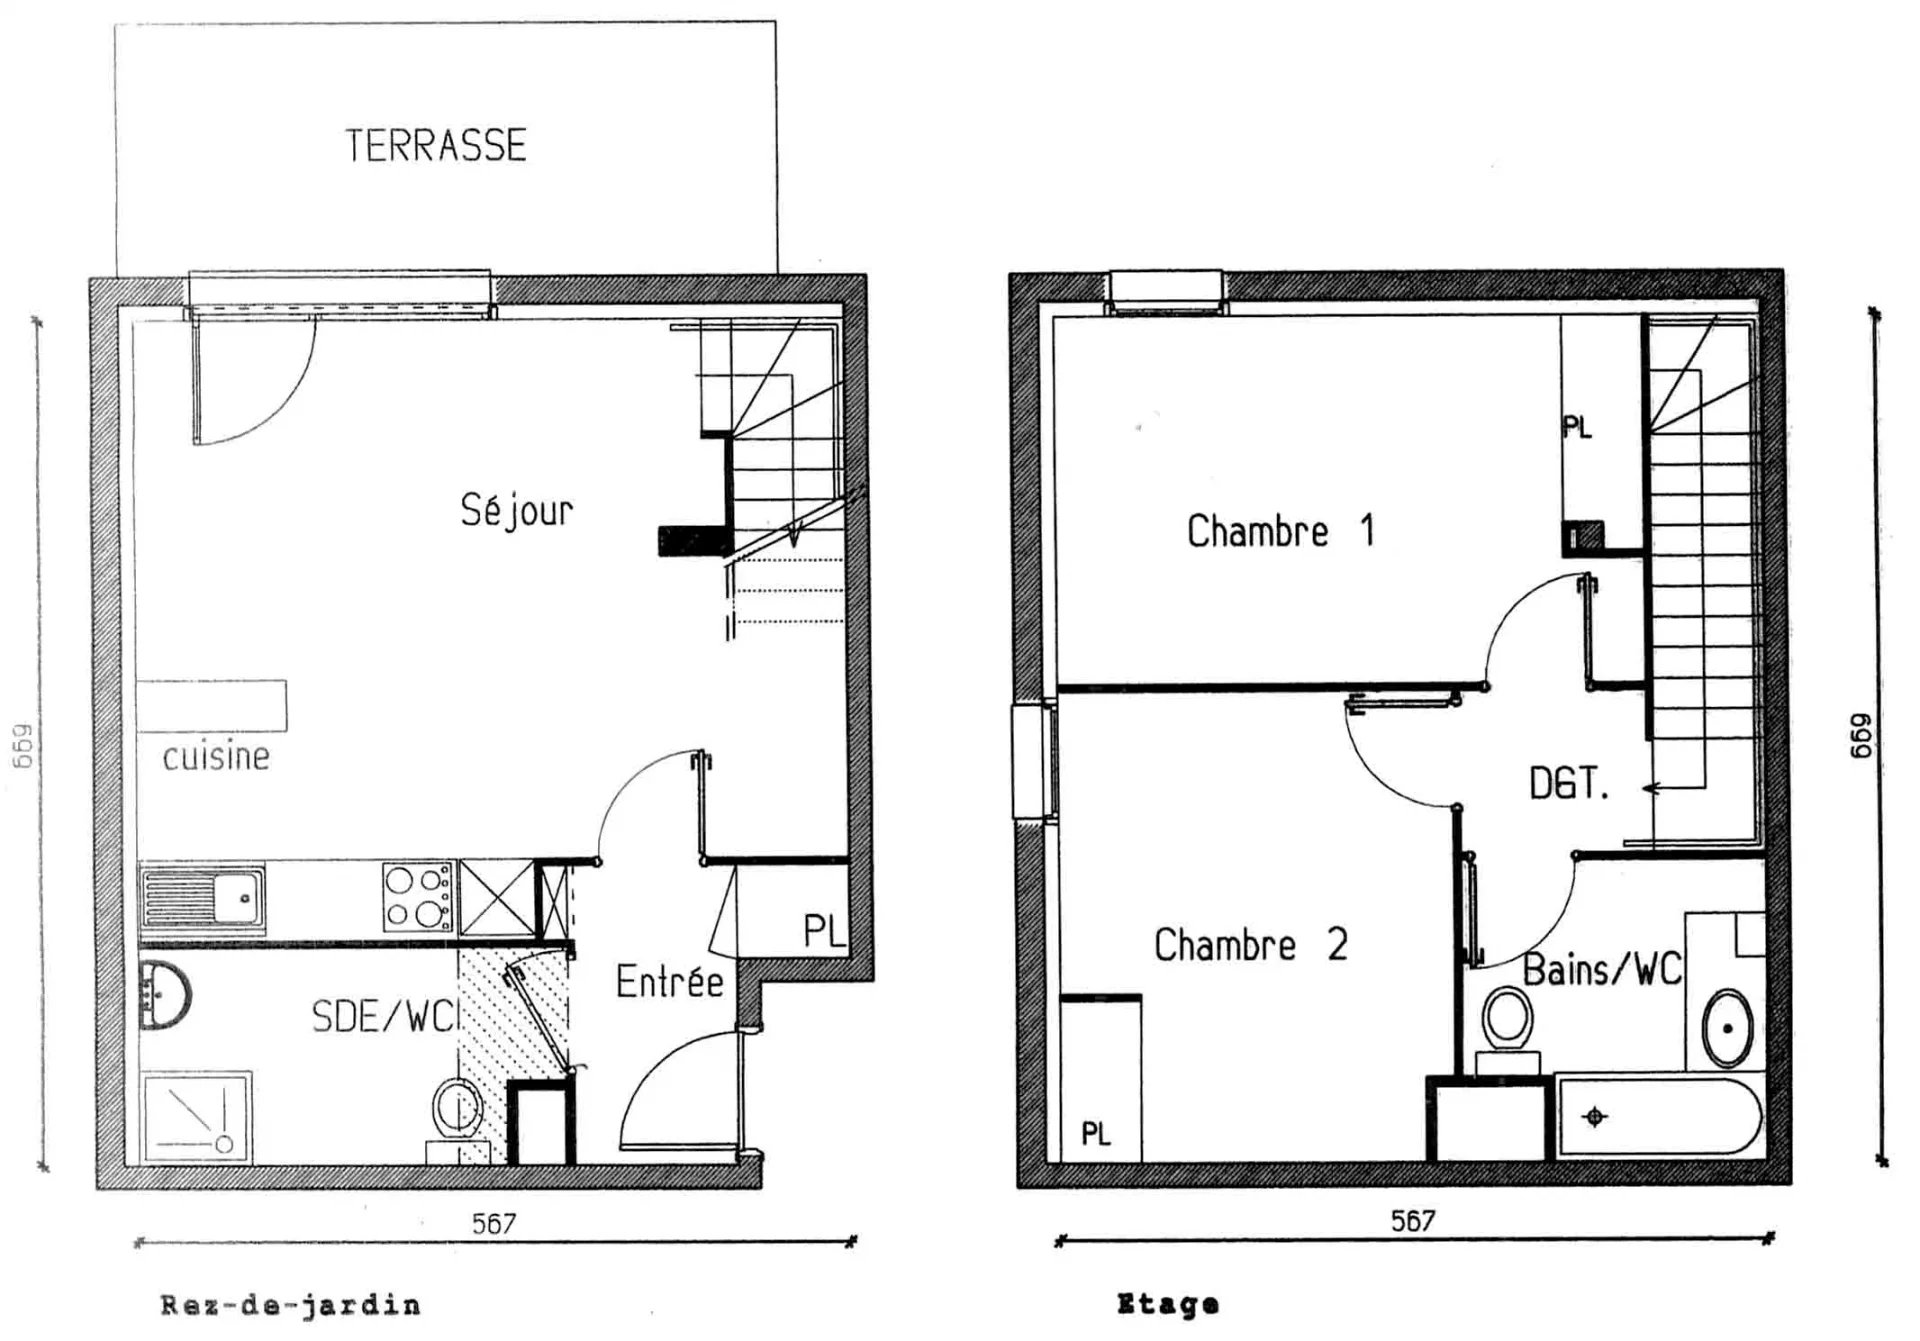 Appartement T3 Duplex - 68m² + jardin - 31200 TOULOUSE SEPT DENIERS